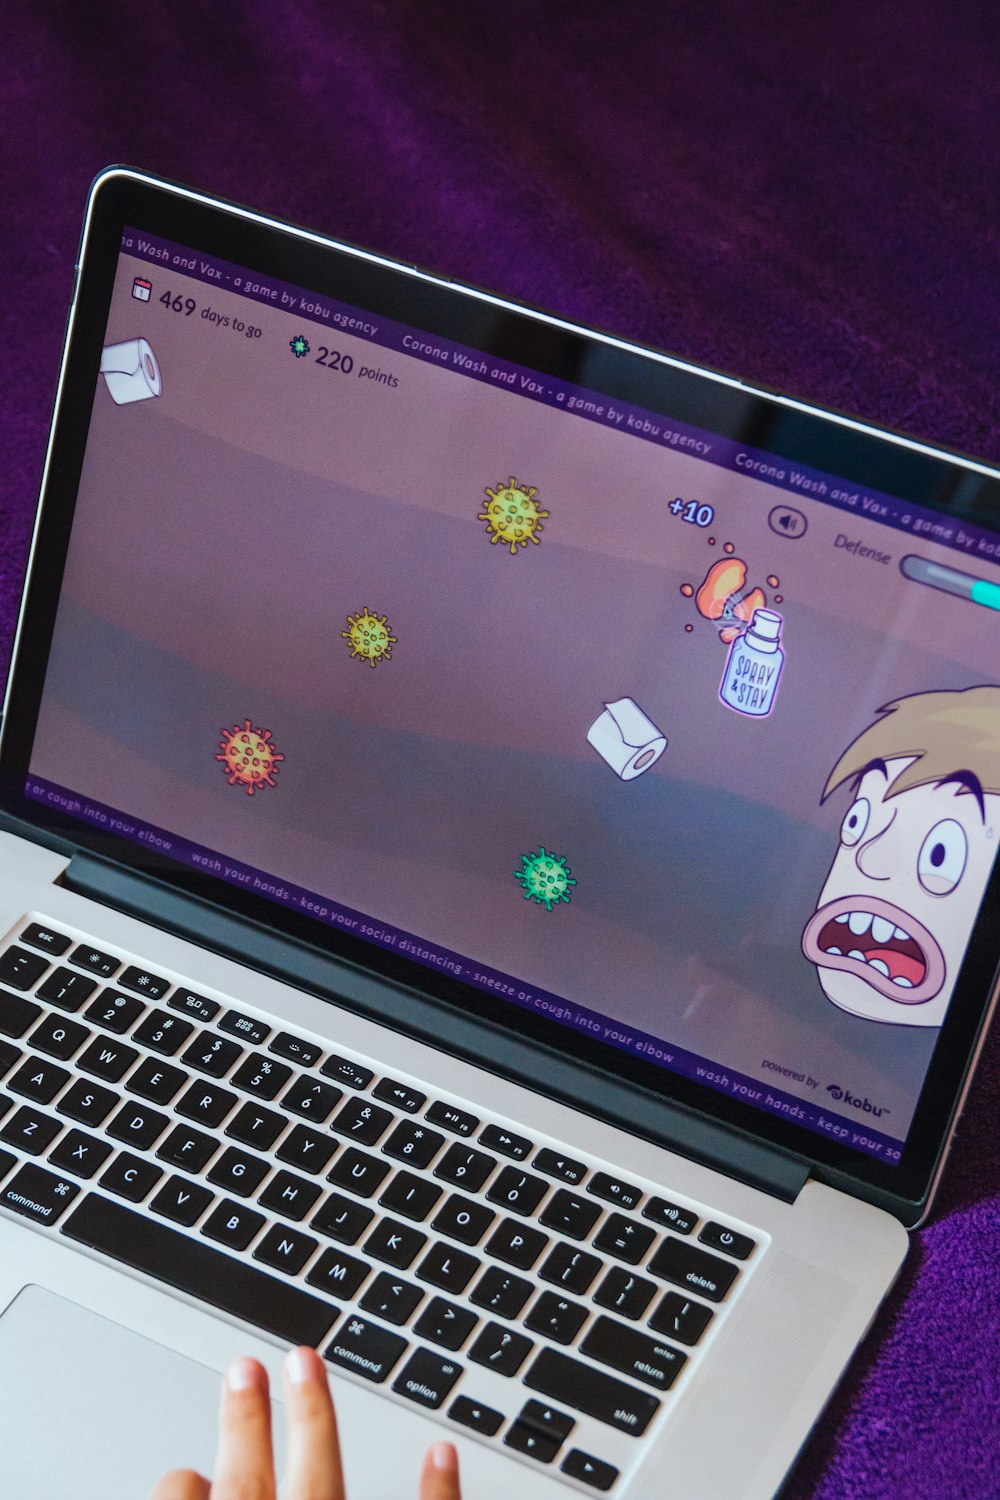 MacBook Pro mostrando un personaje de dibujos animados